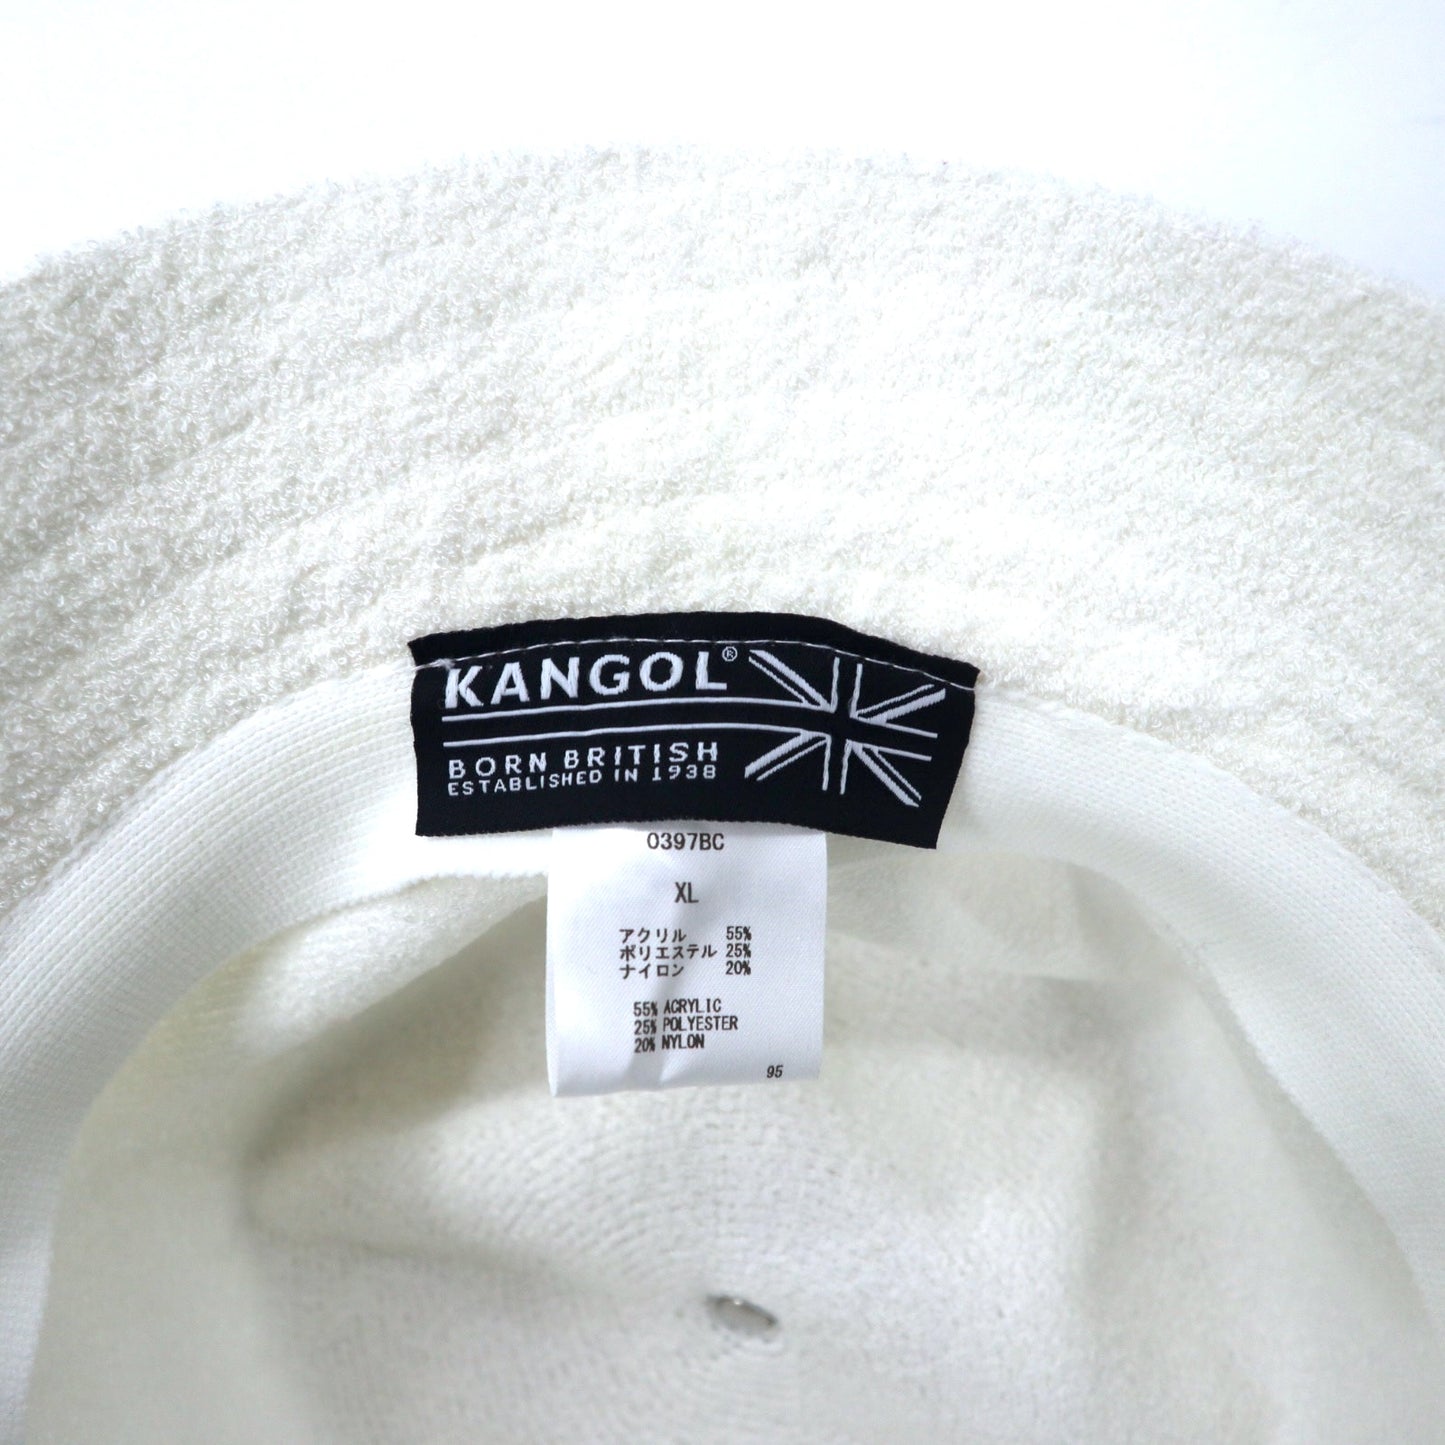 KANGOL バケットハット XL ホワイト アクリル ワンポイントロゴ刺繍 BERMUDA CASUAL バミューダ 0397BC